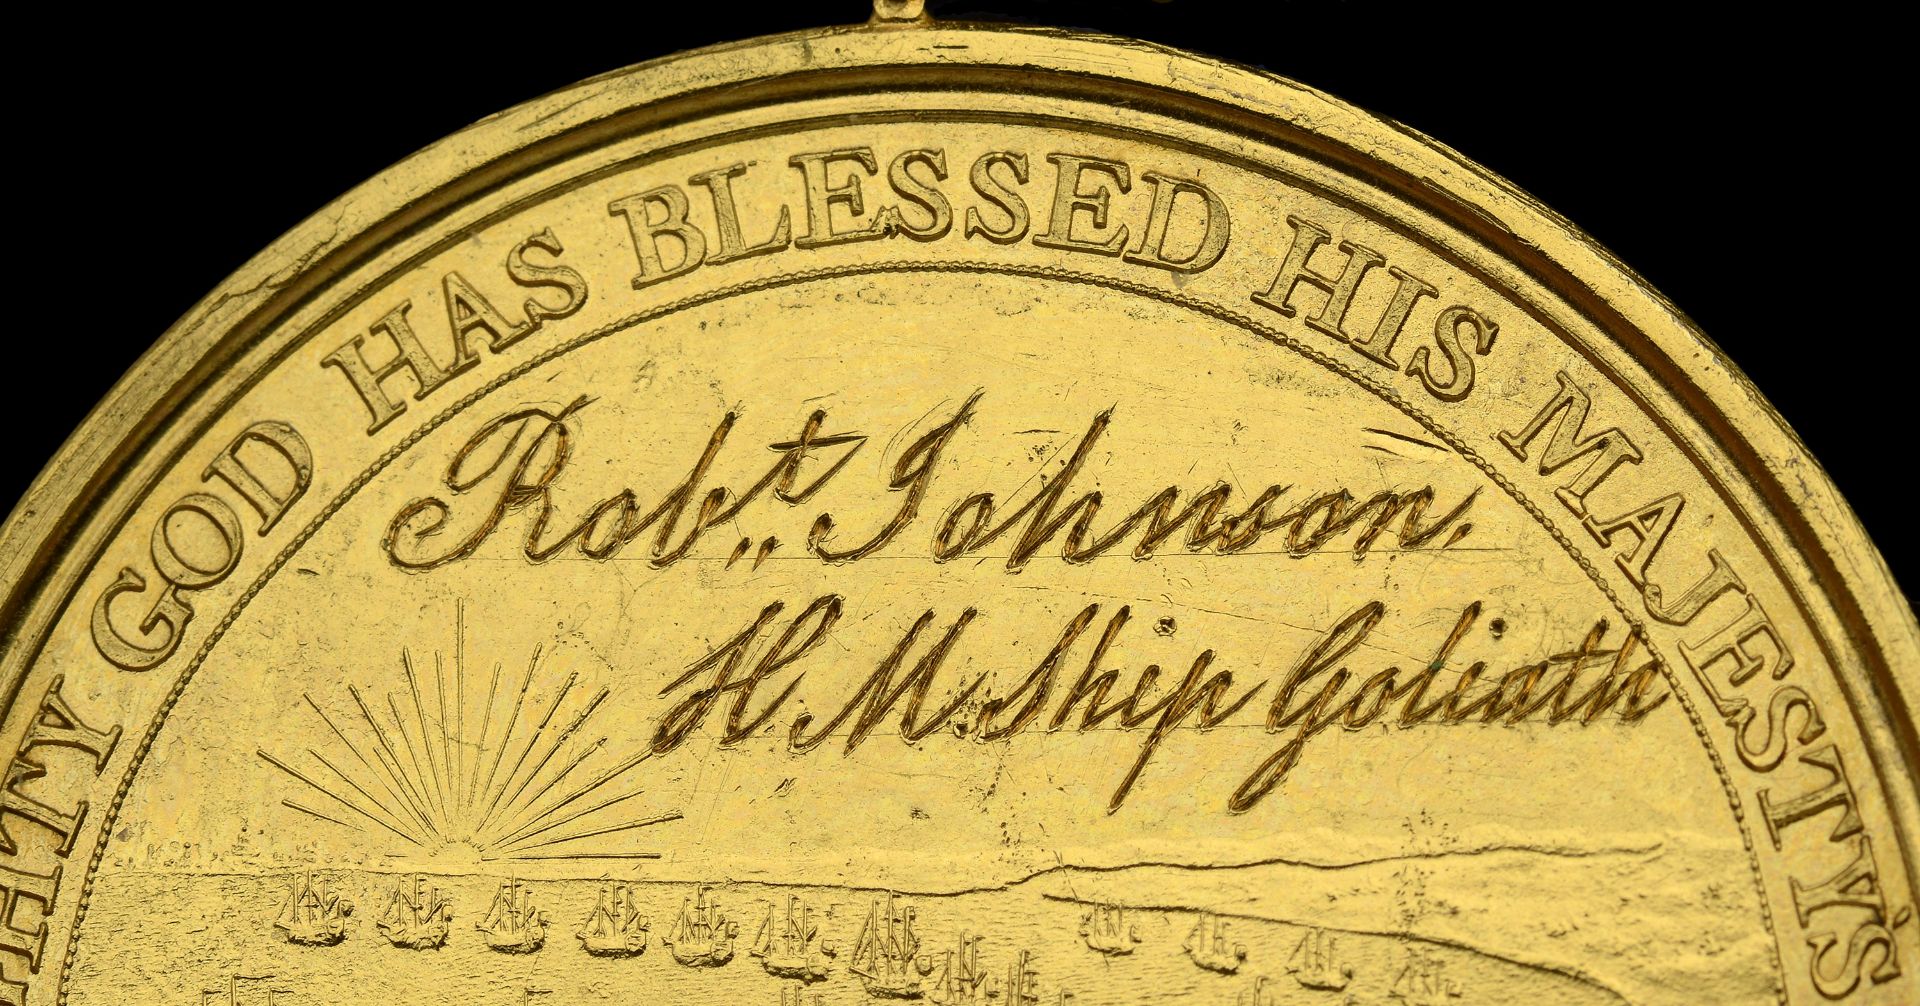 Alexander Davison's Medal for The Nile 1798, bronze-gilt, named on the reverse in fine runni... - Image 2 of 2